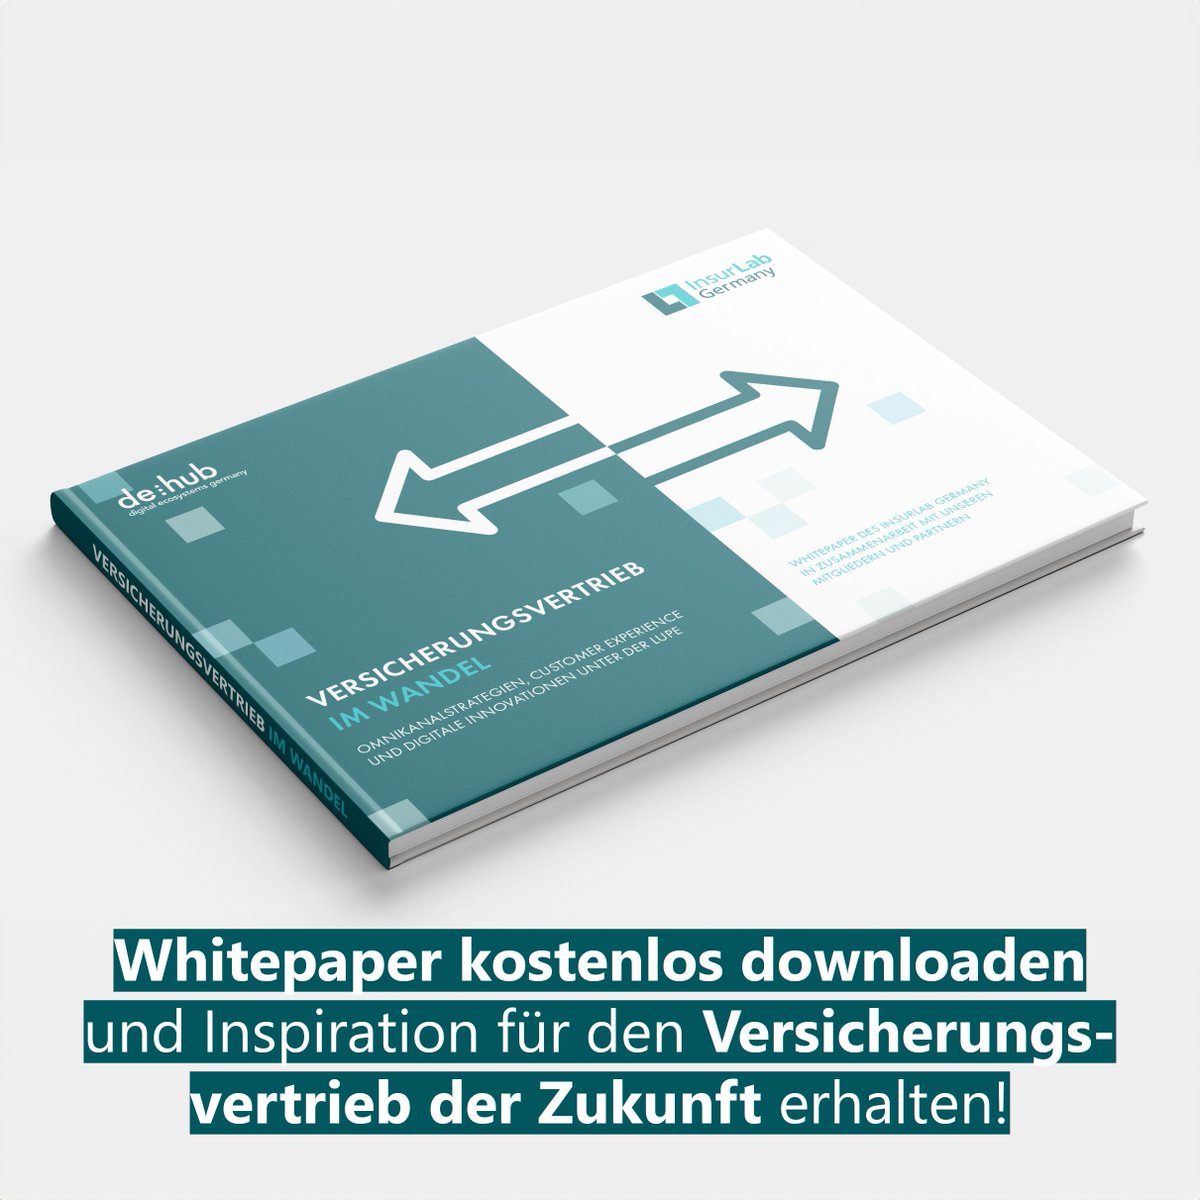 New Publication!  🕮
Unser neuestes #Whitepaper analysiert die Einflüsse von #Digitalisierung, #Daten und #Demografie auf den #Versicherungvertrieb.💡

➡️ eu1.hubs.ly/H08Cjgp0

#InnovateInsurance  #Whitepaper #Vertrieb #EmbeddedInsurance #OmniChannel